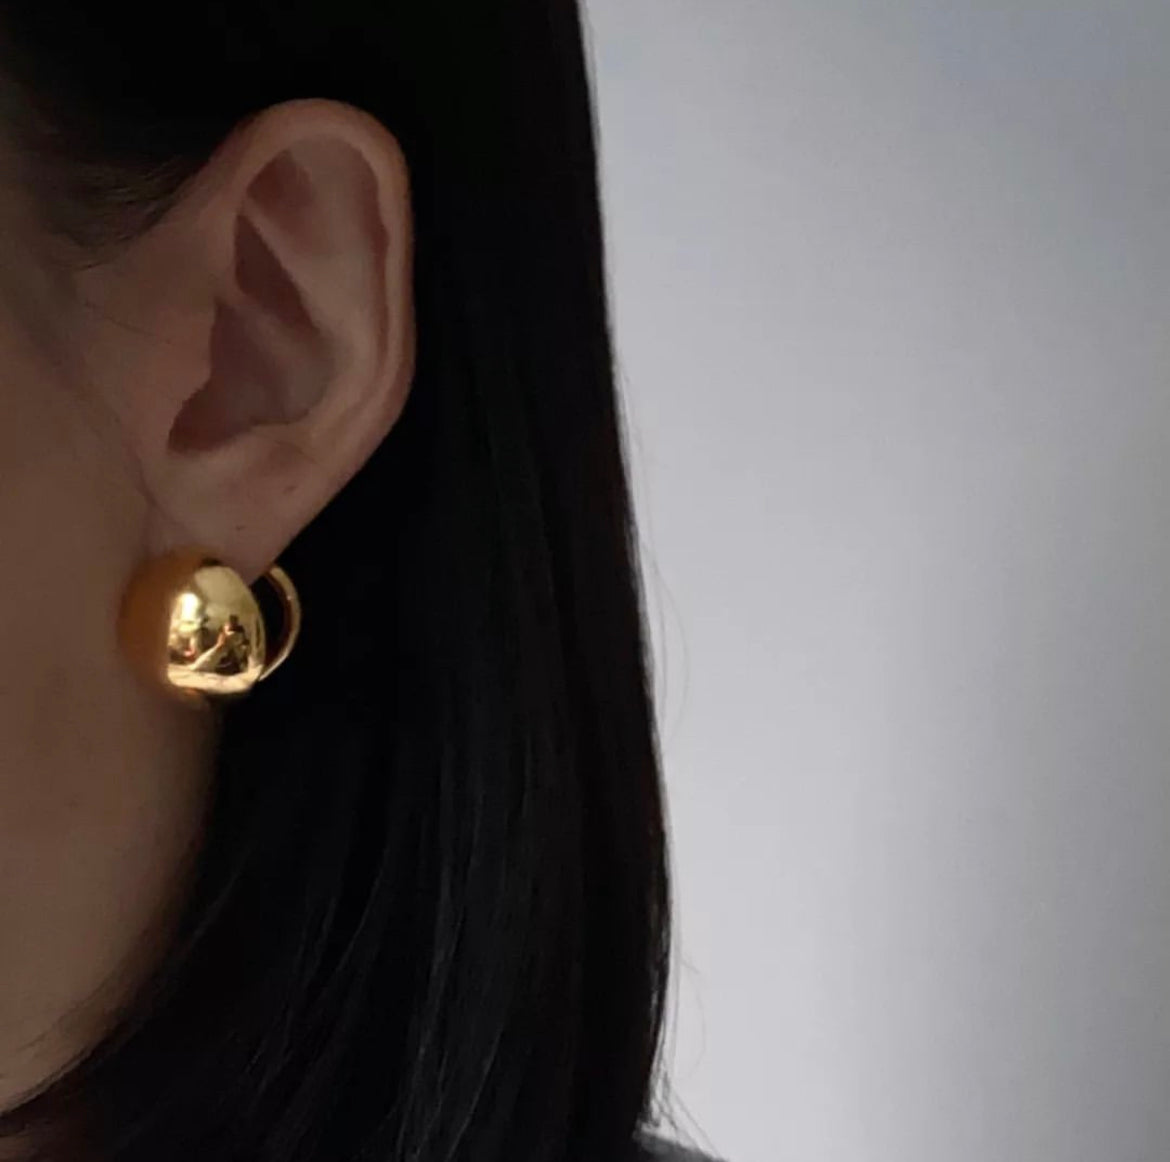 Omega Earrings in Gold